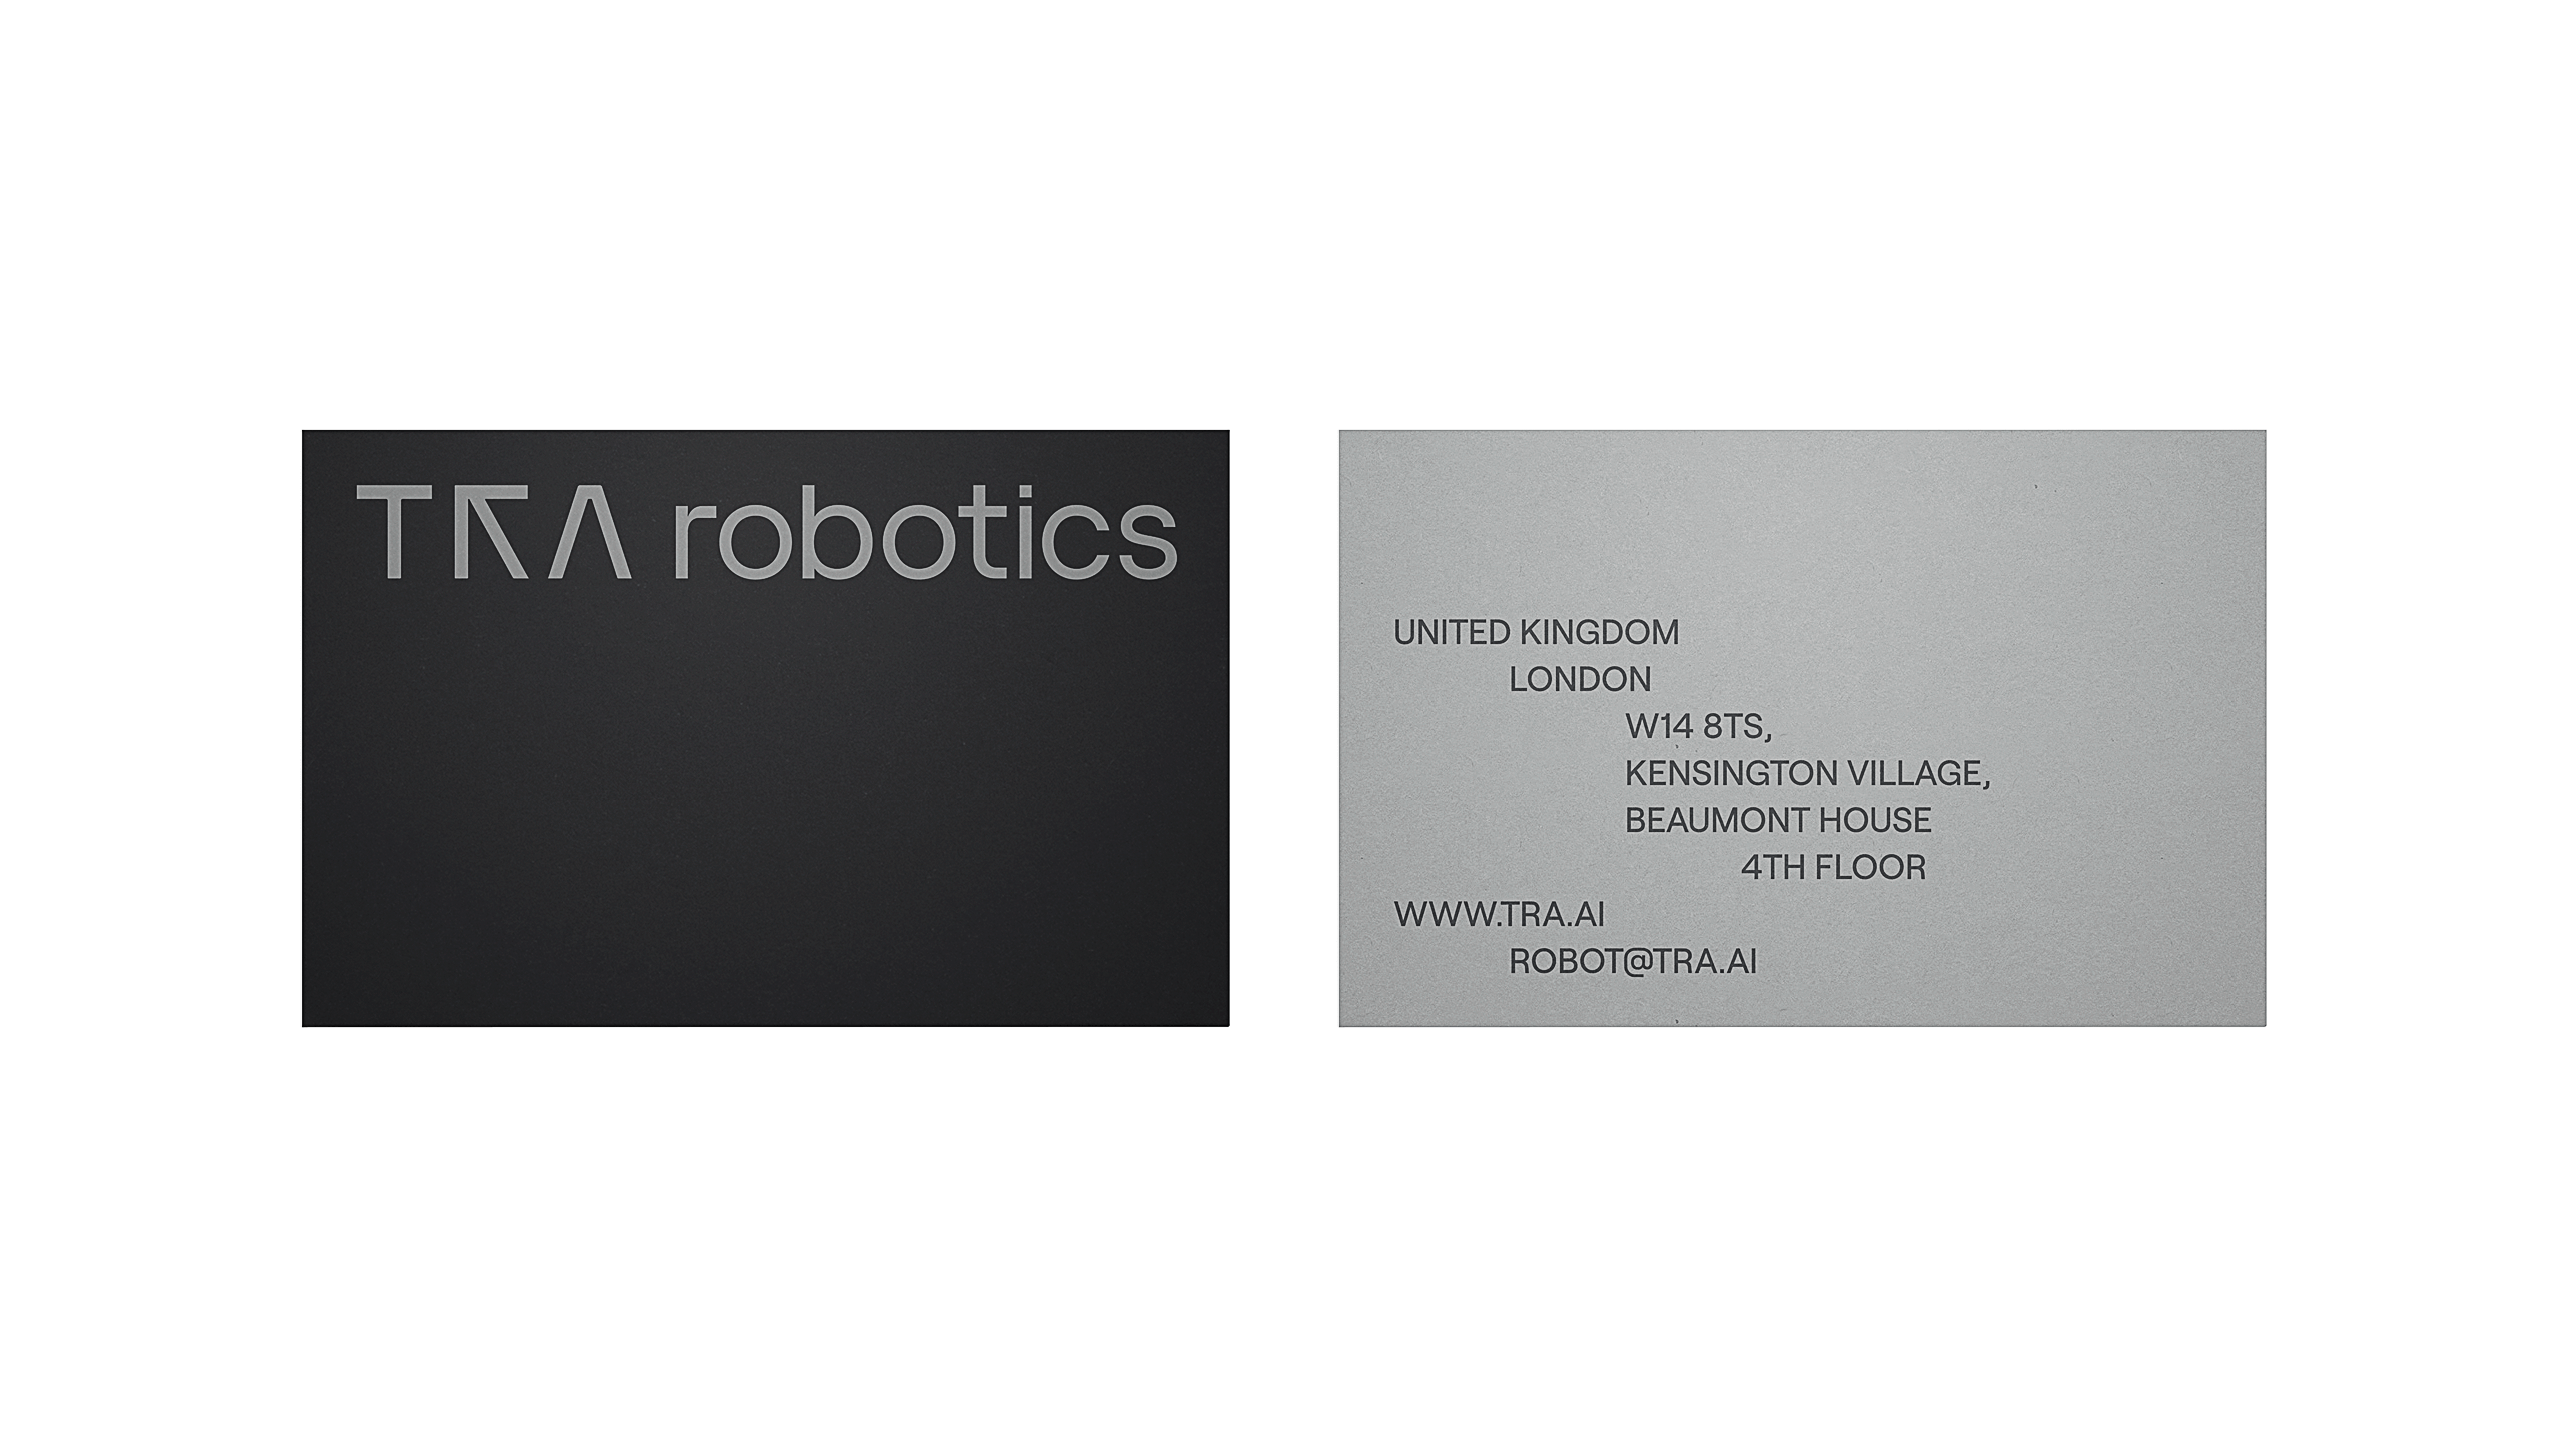 Fullfort_TRA_Robotics_Identity_09